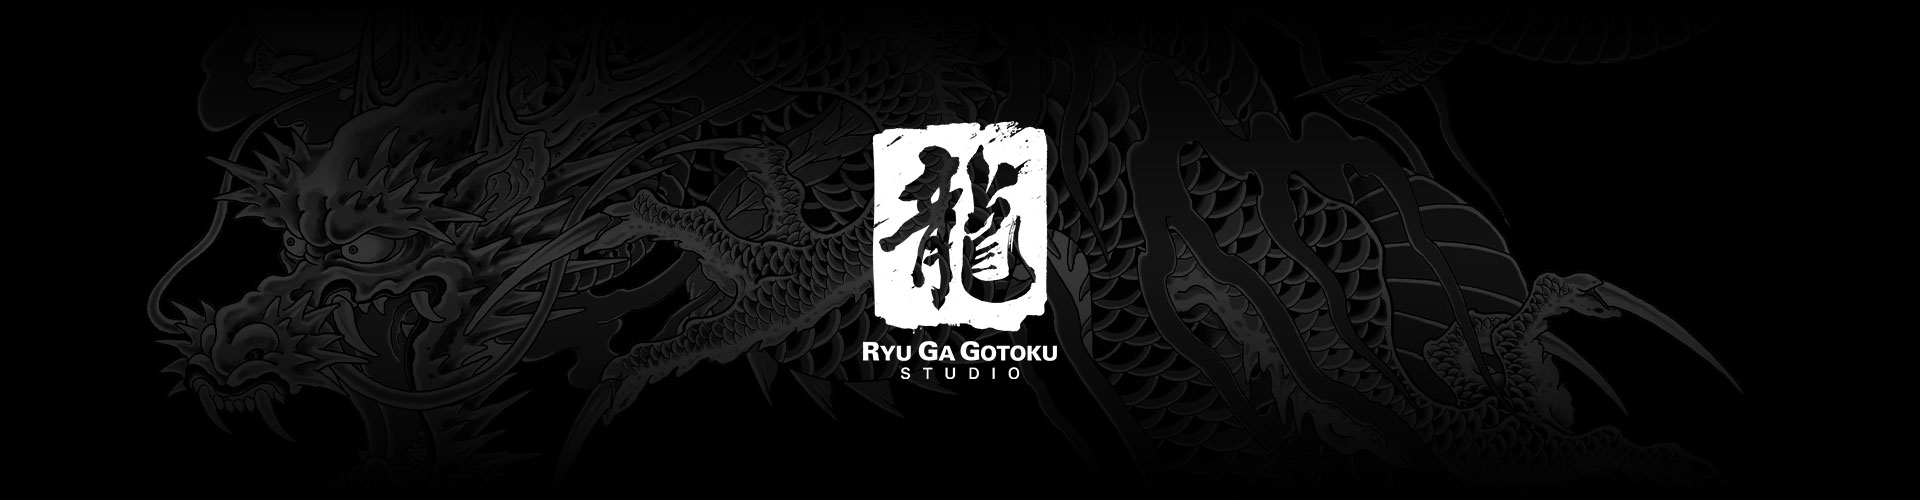 Ryu Ga Gotoku Studio-logo med en grå drage-tatoveringsbakgrunn.